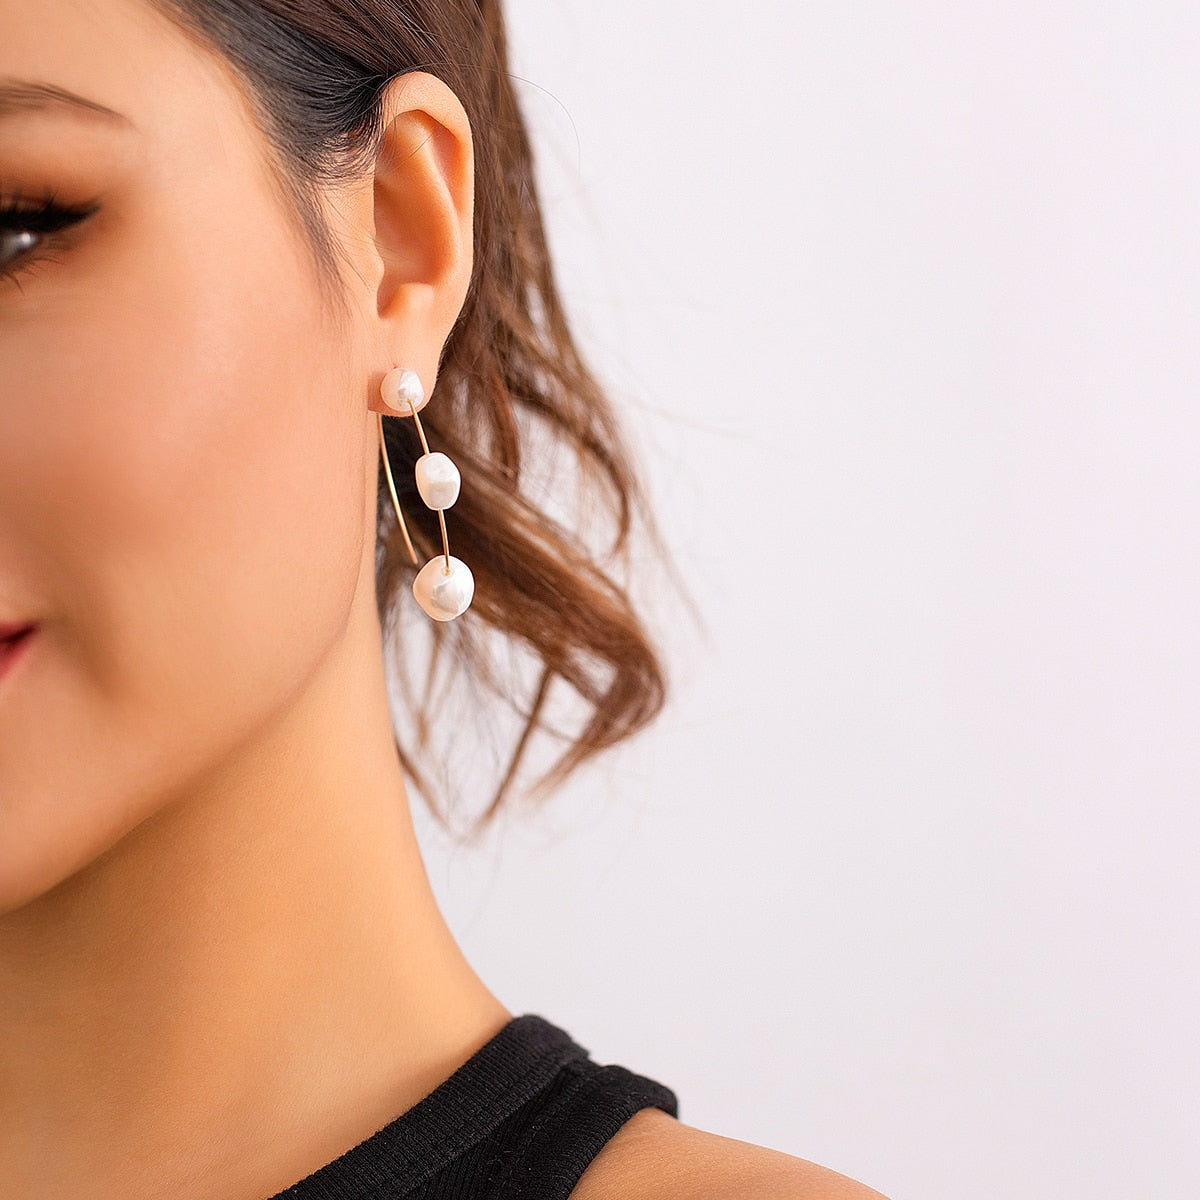 Maytrends Simple Elegant Metal Big C-shaped Ring Earrings Fashion Imitation Pearl Hoop Earrings Women's Party Elegant Jewelry